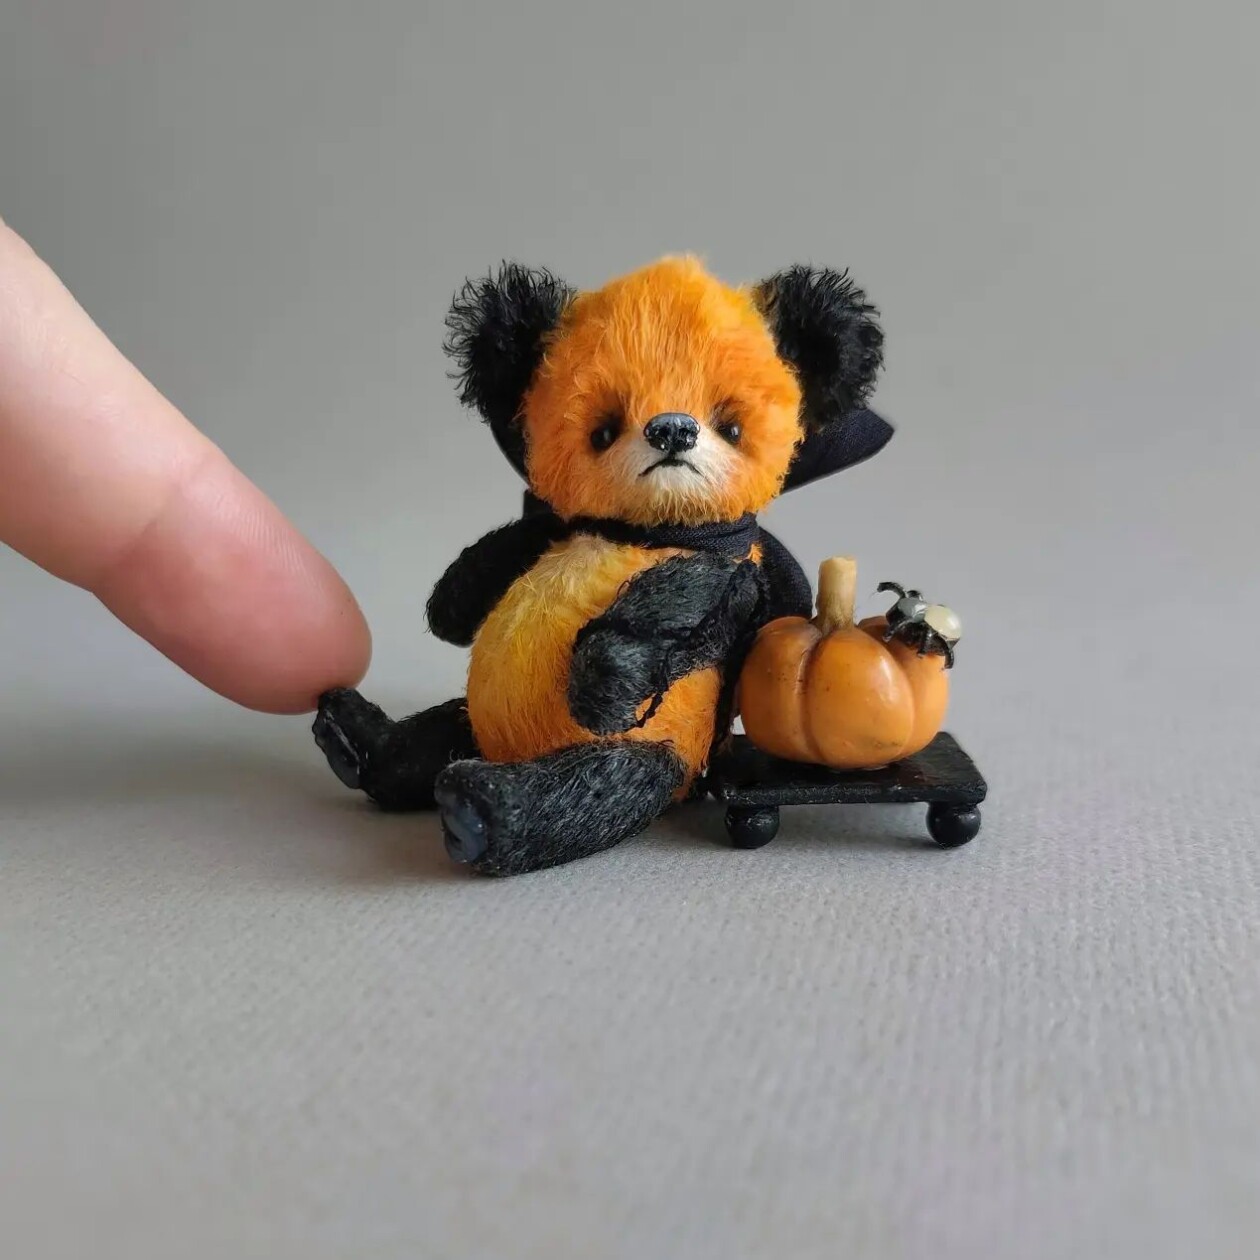 Gorgeous Animal Toys In Miniature By Koshcheeva Anna (1)